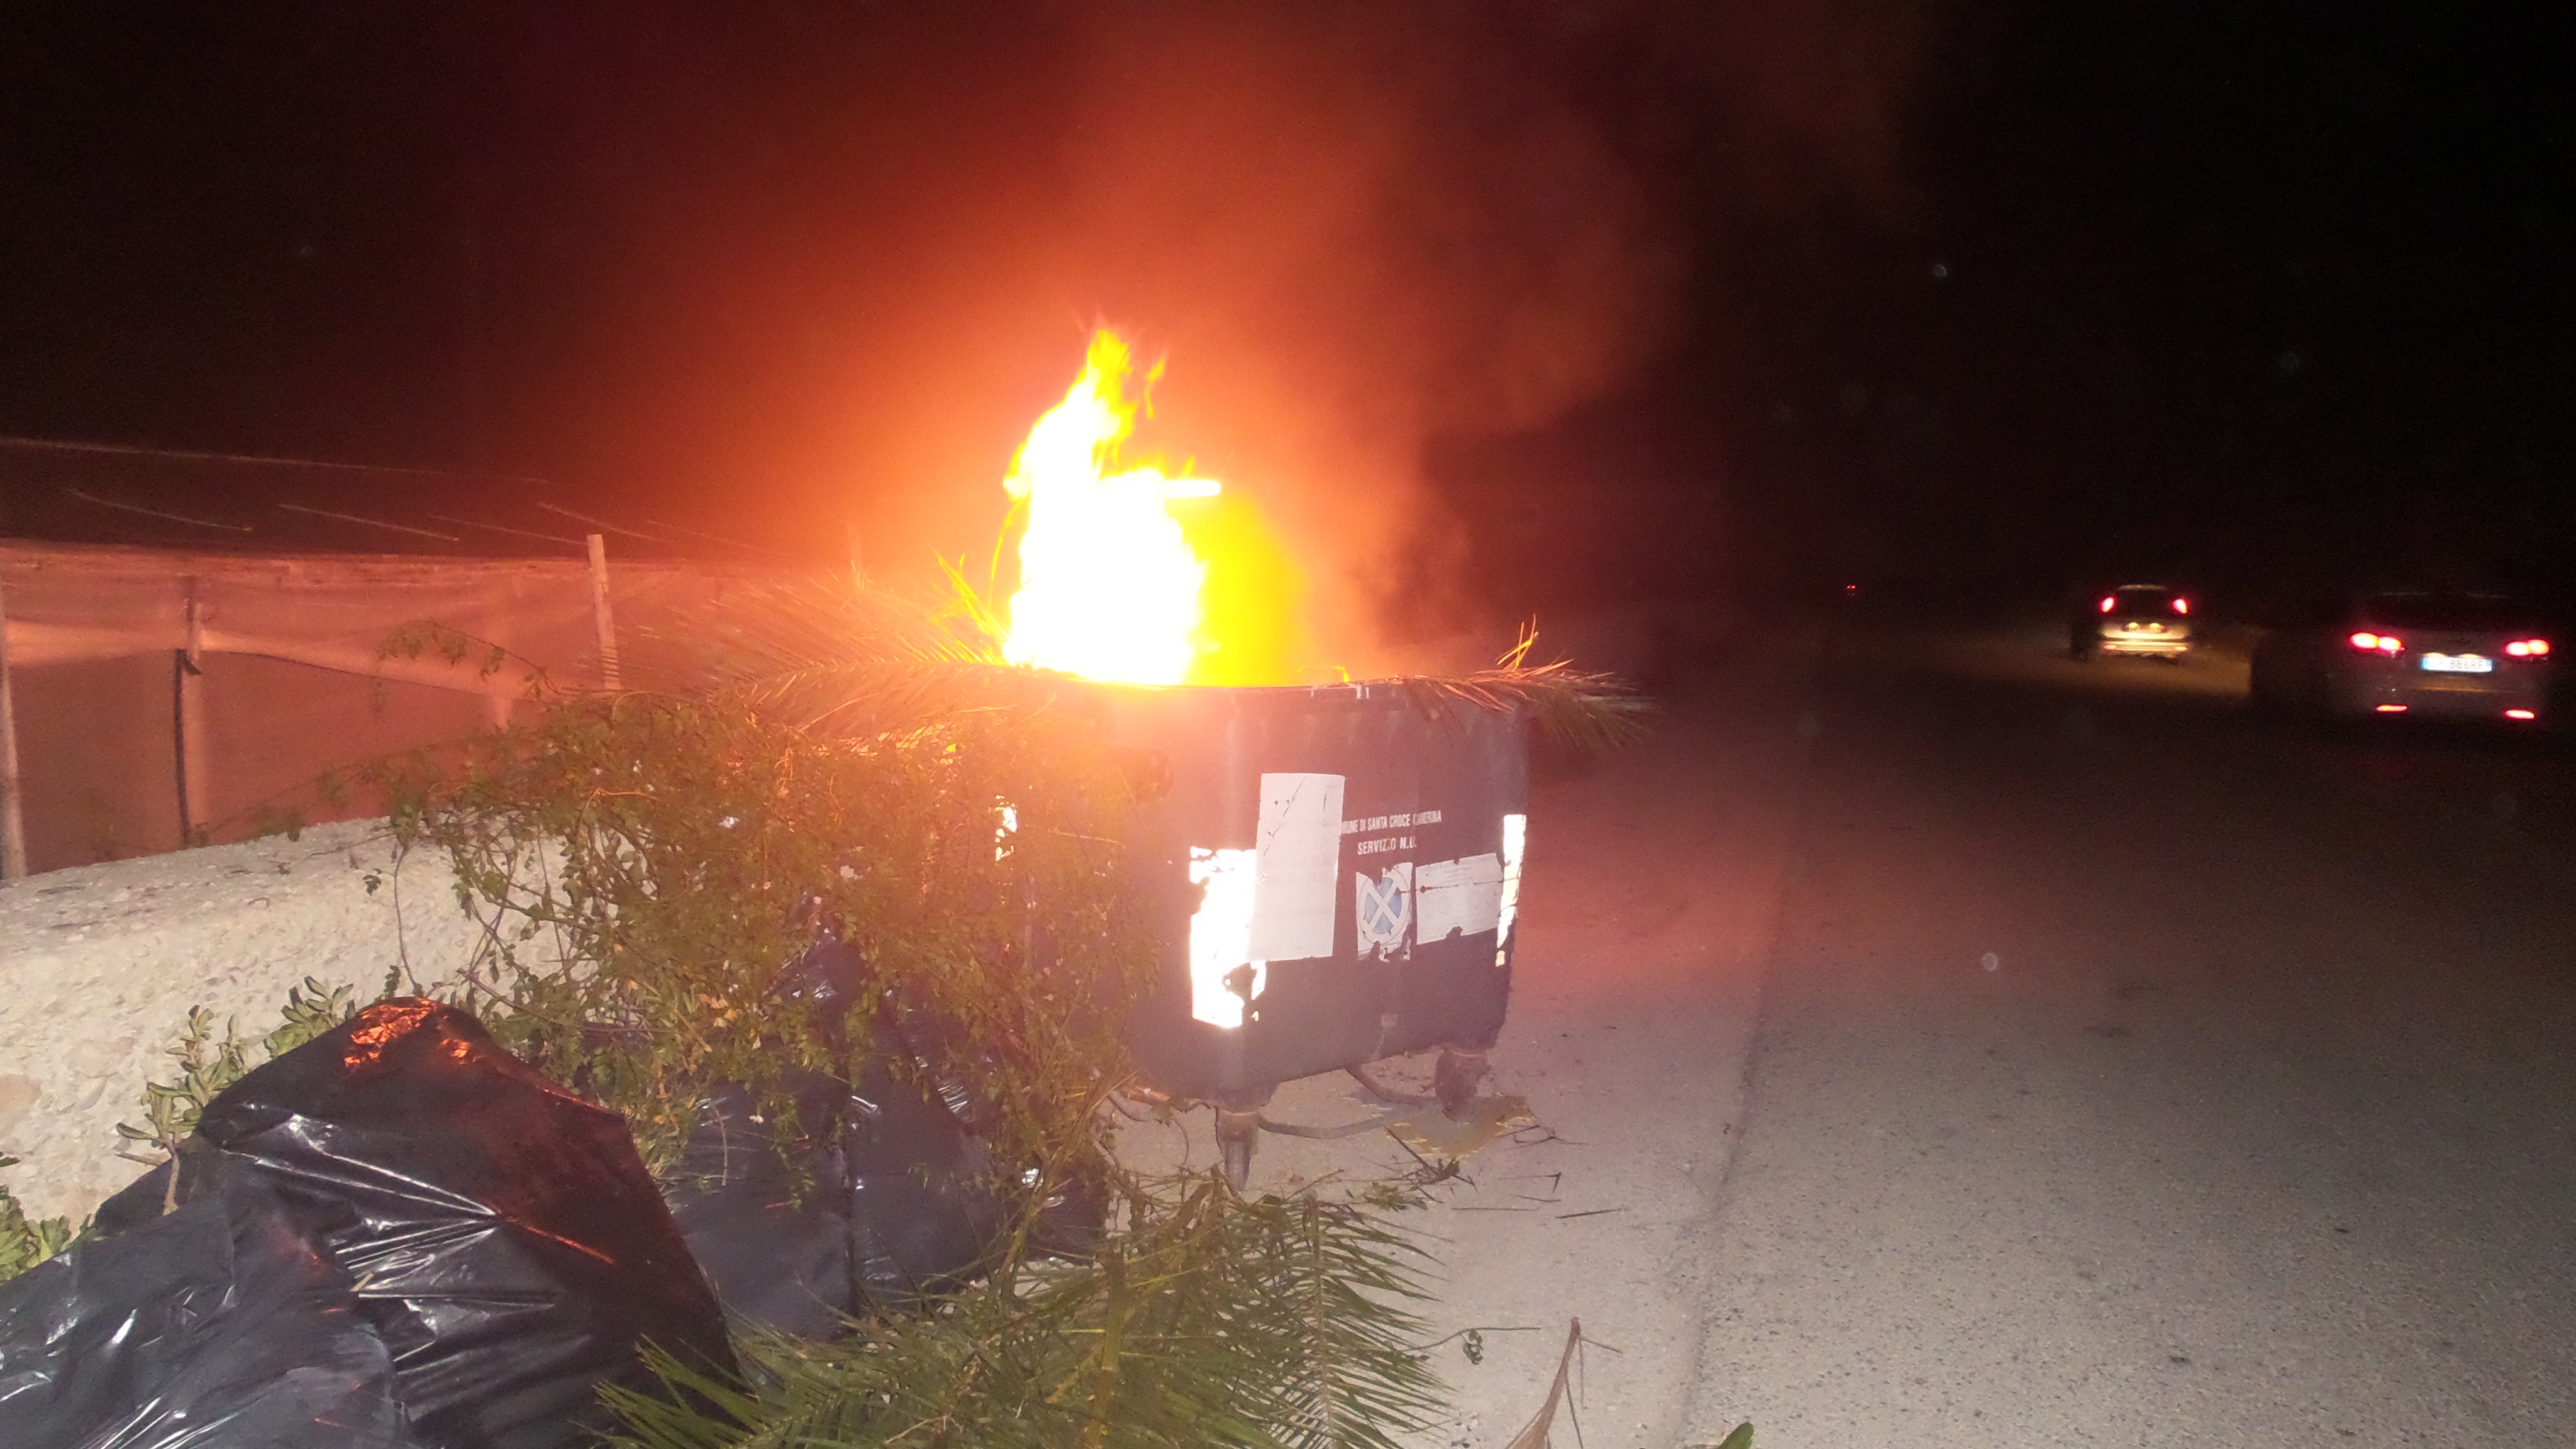  Incendiato un cassonetto sulla Punta Secca-Punta Braccetto, Fare Ambiente: “Basta con l’inciviltà”